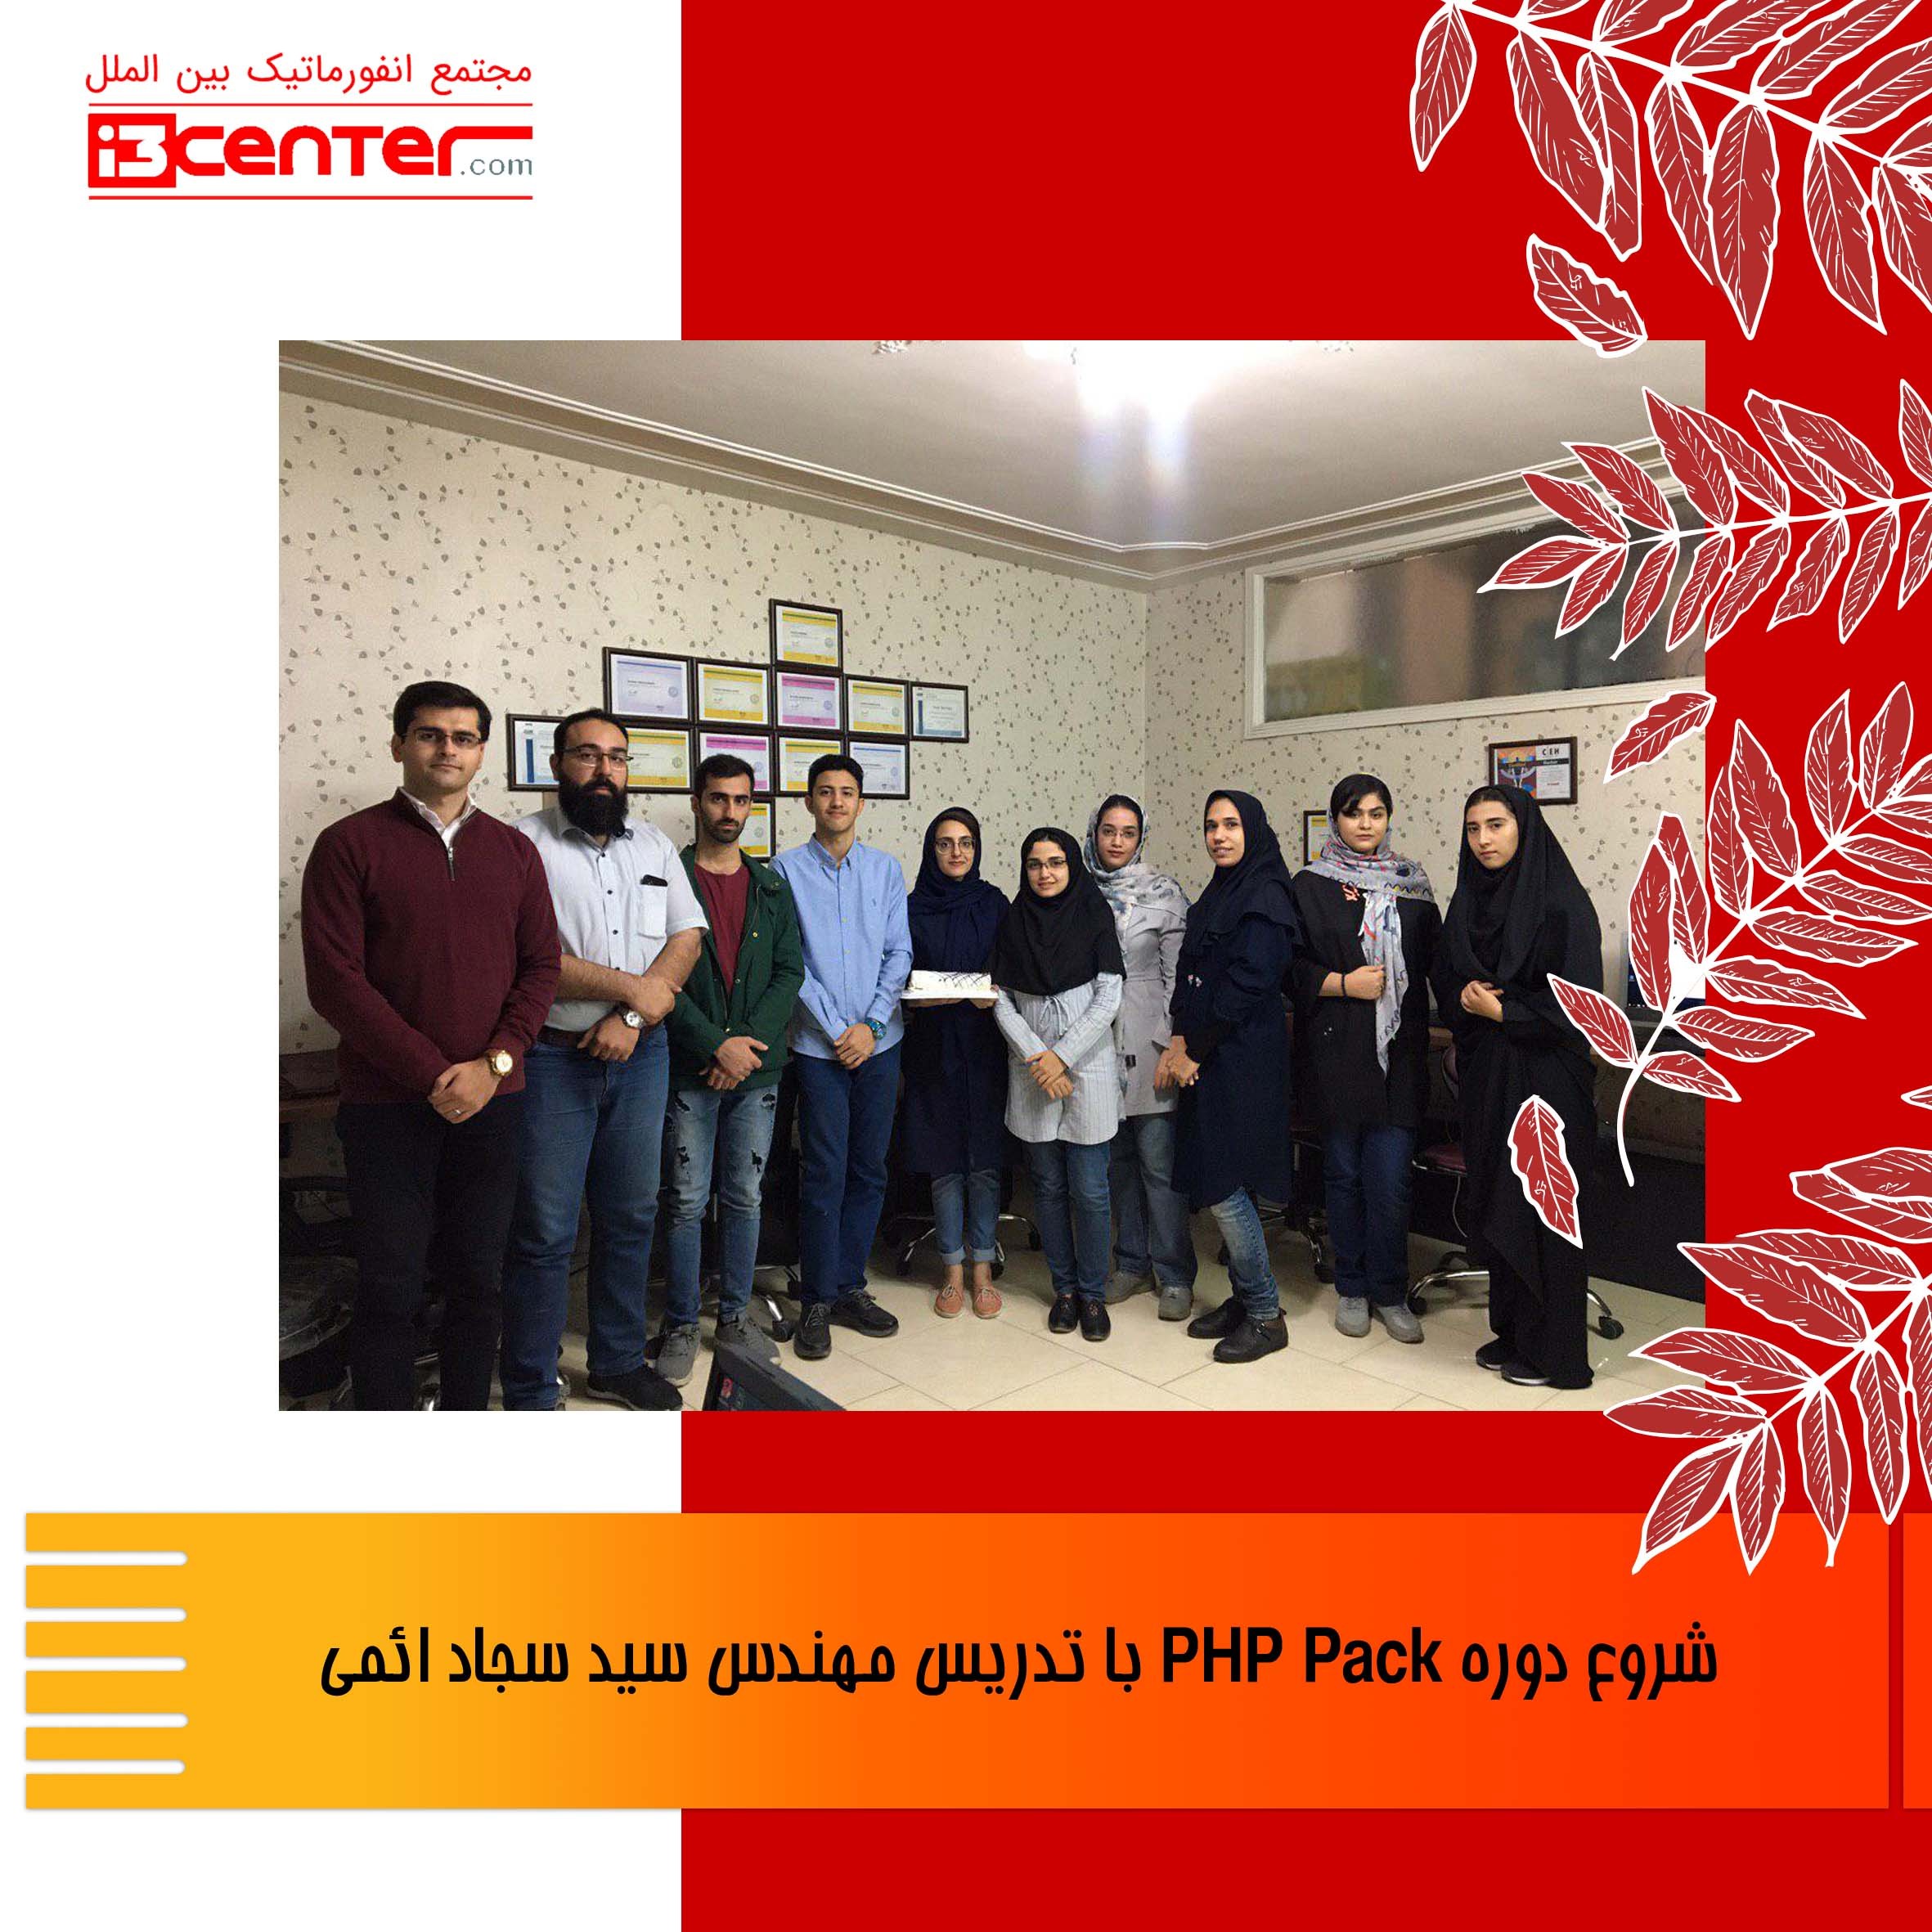 جشن شروع دوره PHP Pack با تدریس مهندس سید سجاد ائمی